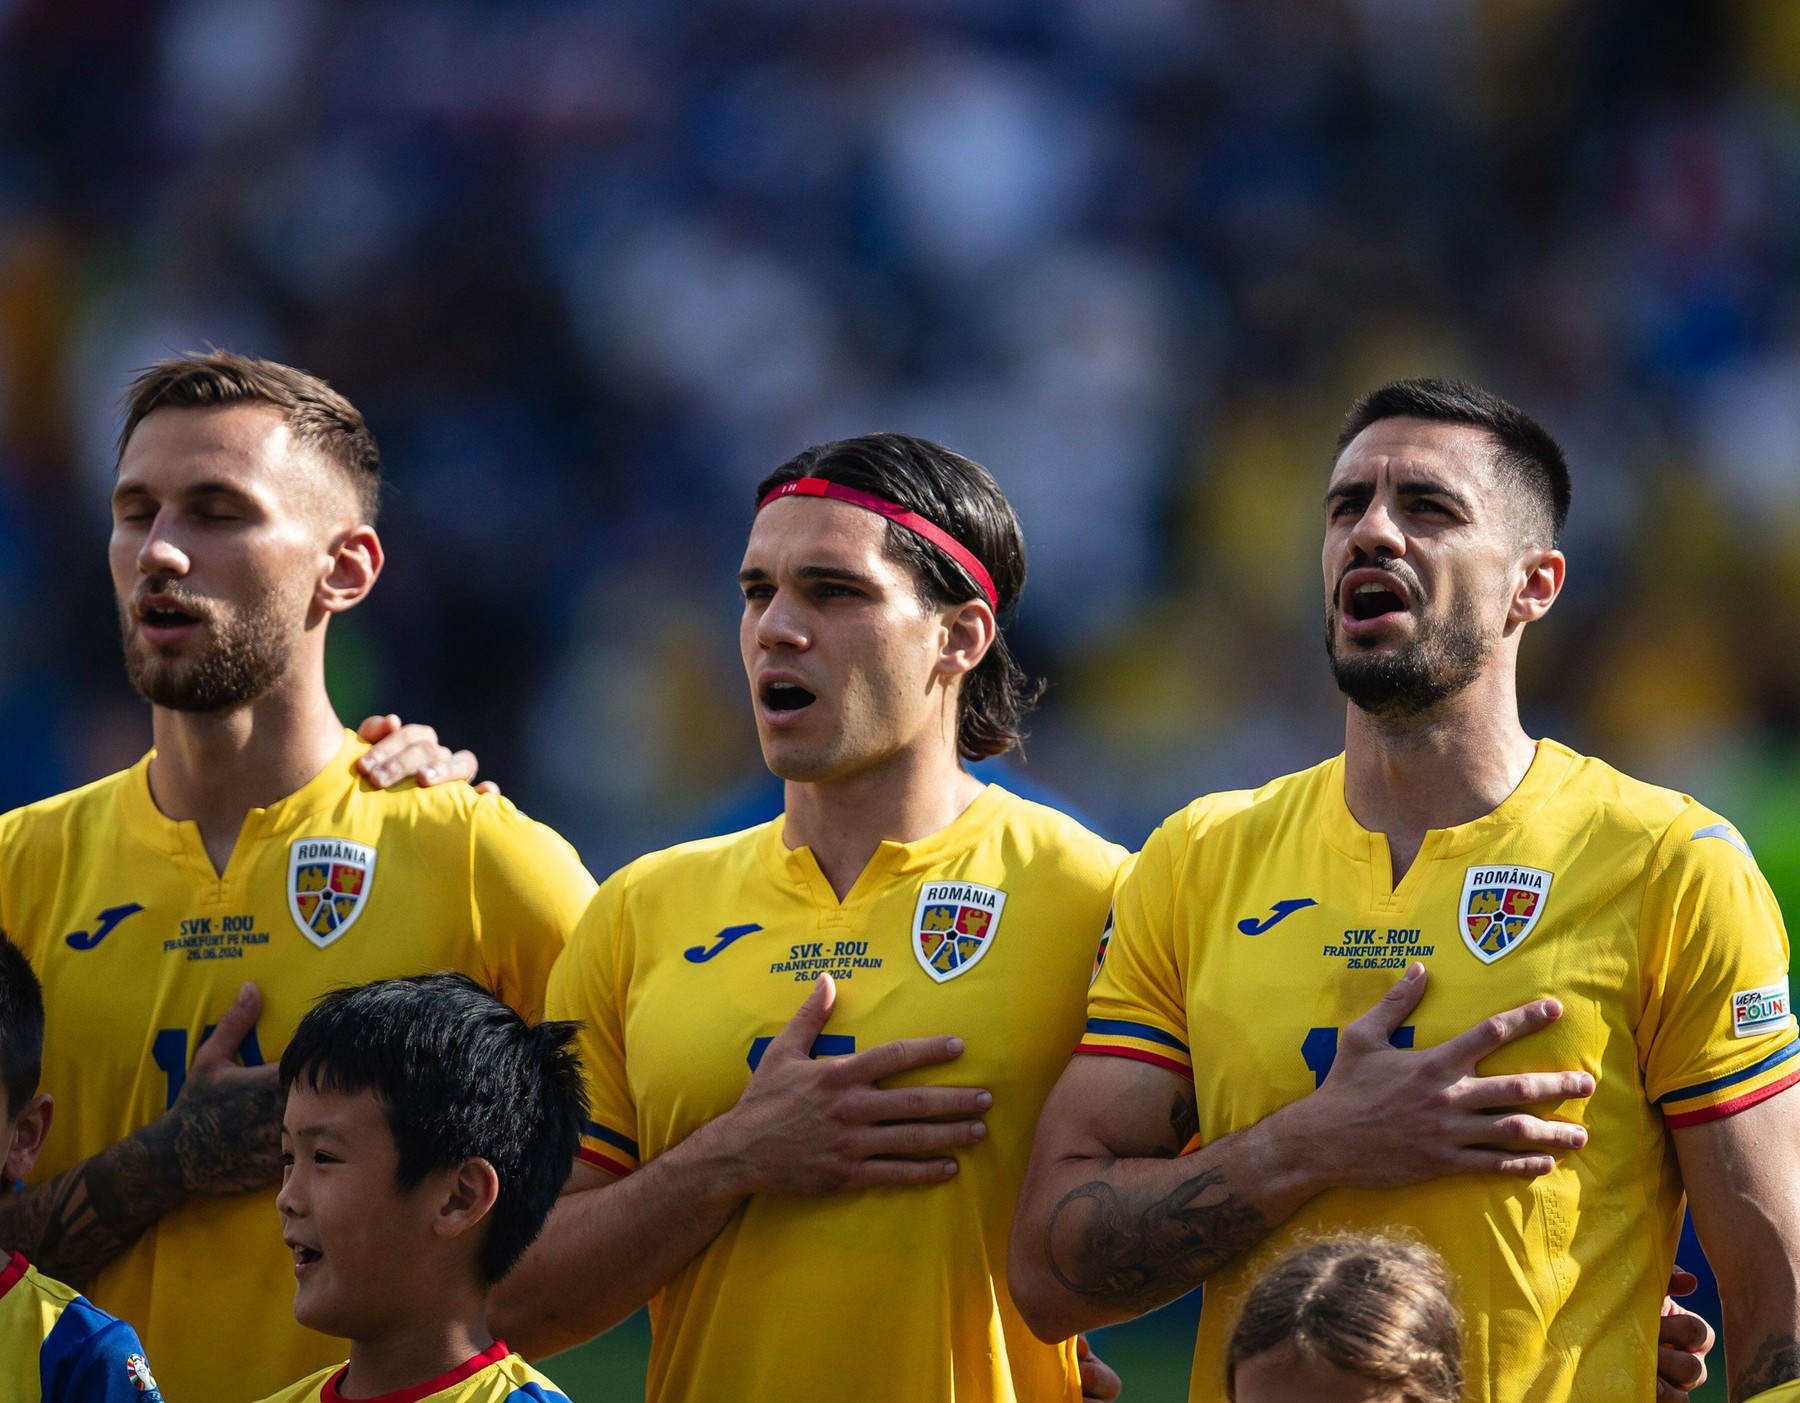 Fotbalistul român care l-a impresionat pe Cristi Chivu la EURO 2024: ”Deși s-au dat alte nume, mi-a plăcut mult”